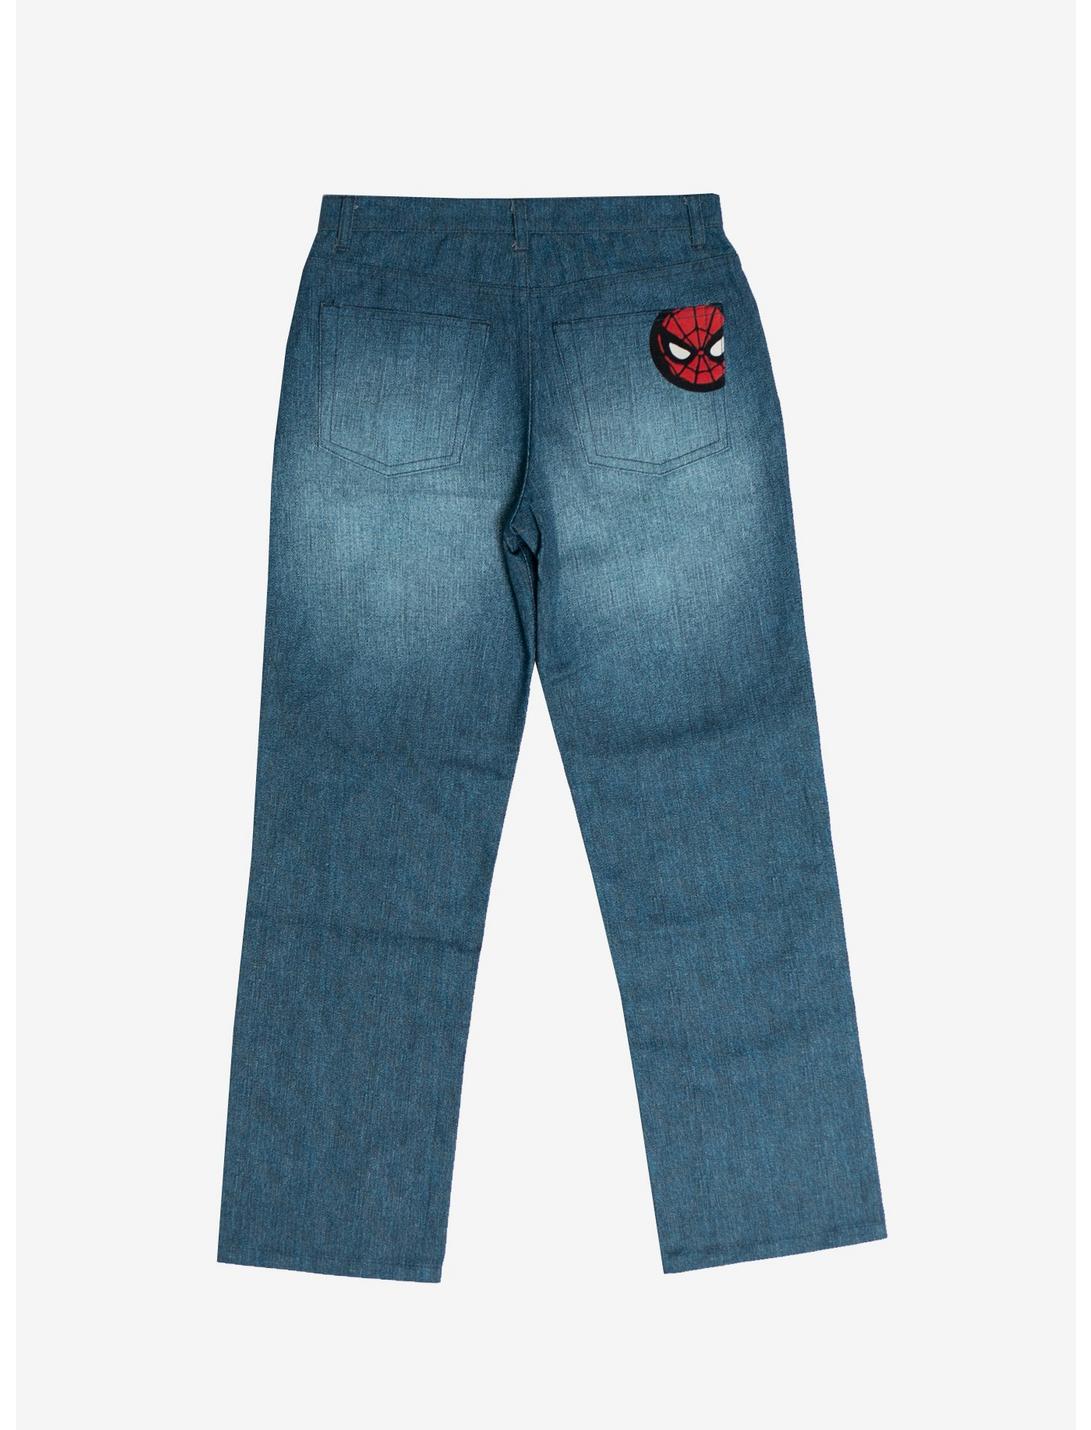 Spider-Man Boys Denim Button Front Straight Leg Jean - Walmart.com